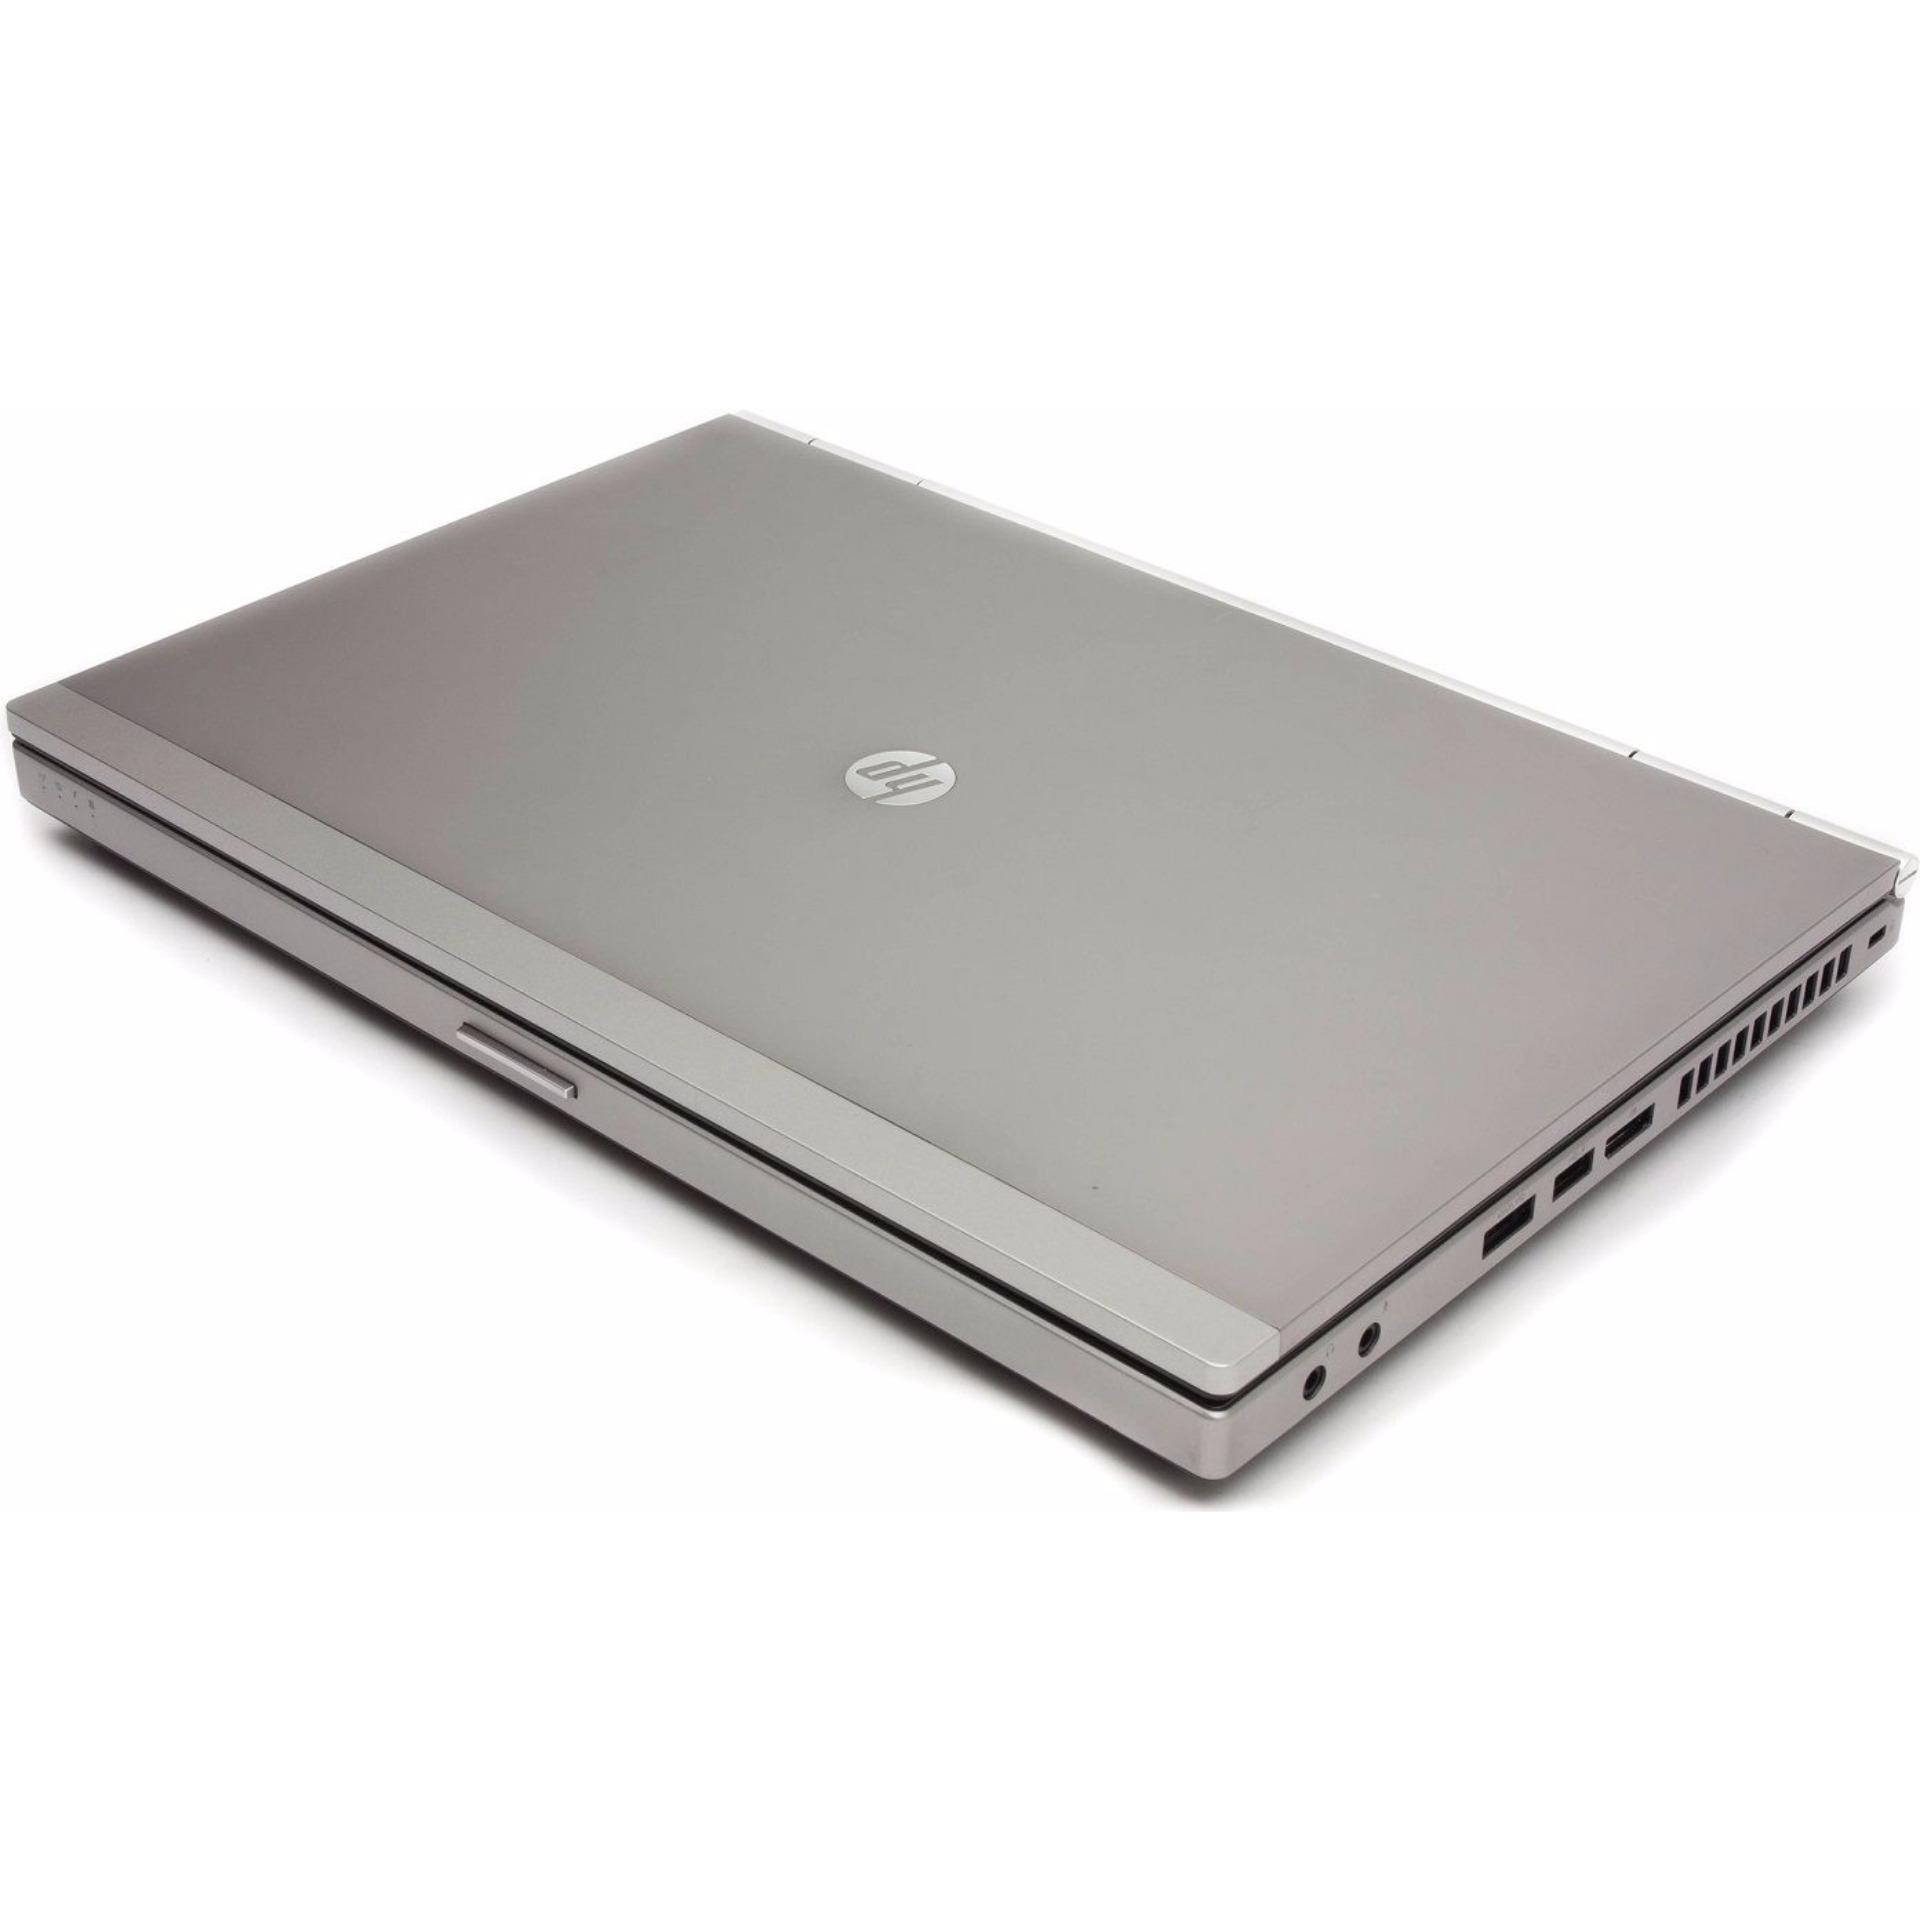 (Refurbished) HP Elitebook 8470/ Core i5 /320GB HDD/ 4GB RAM